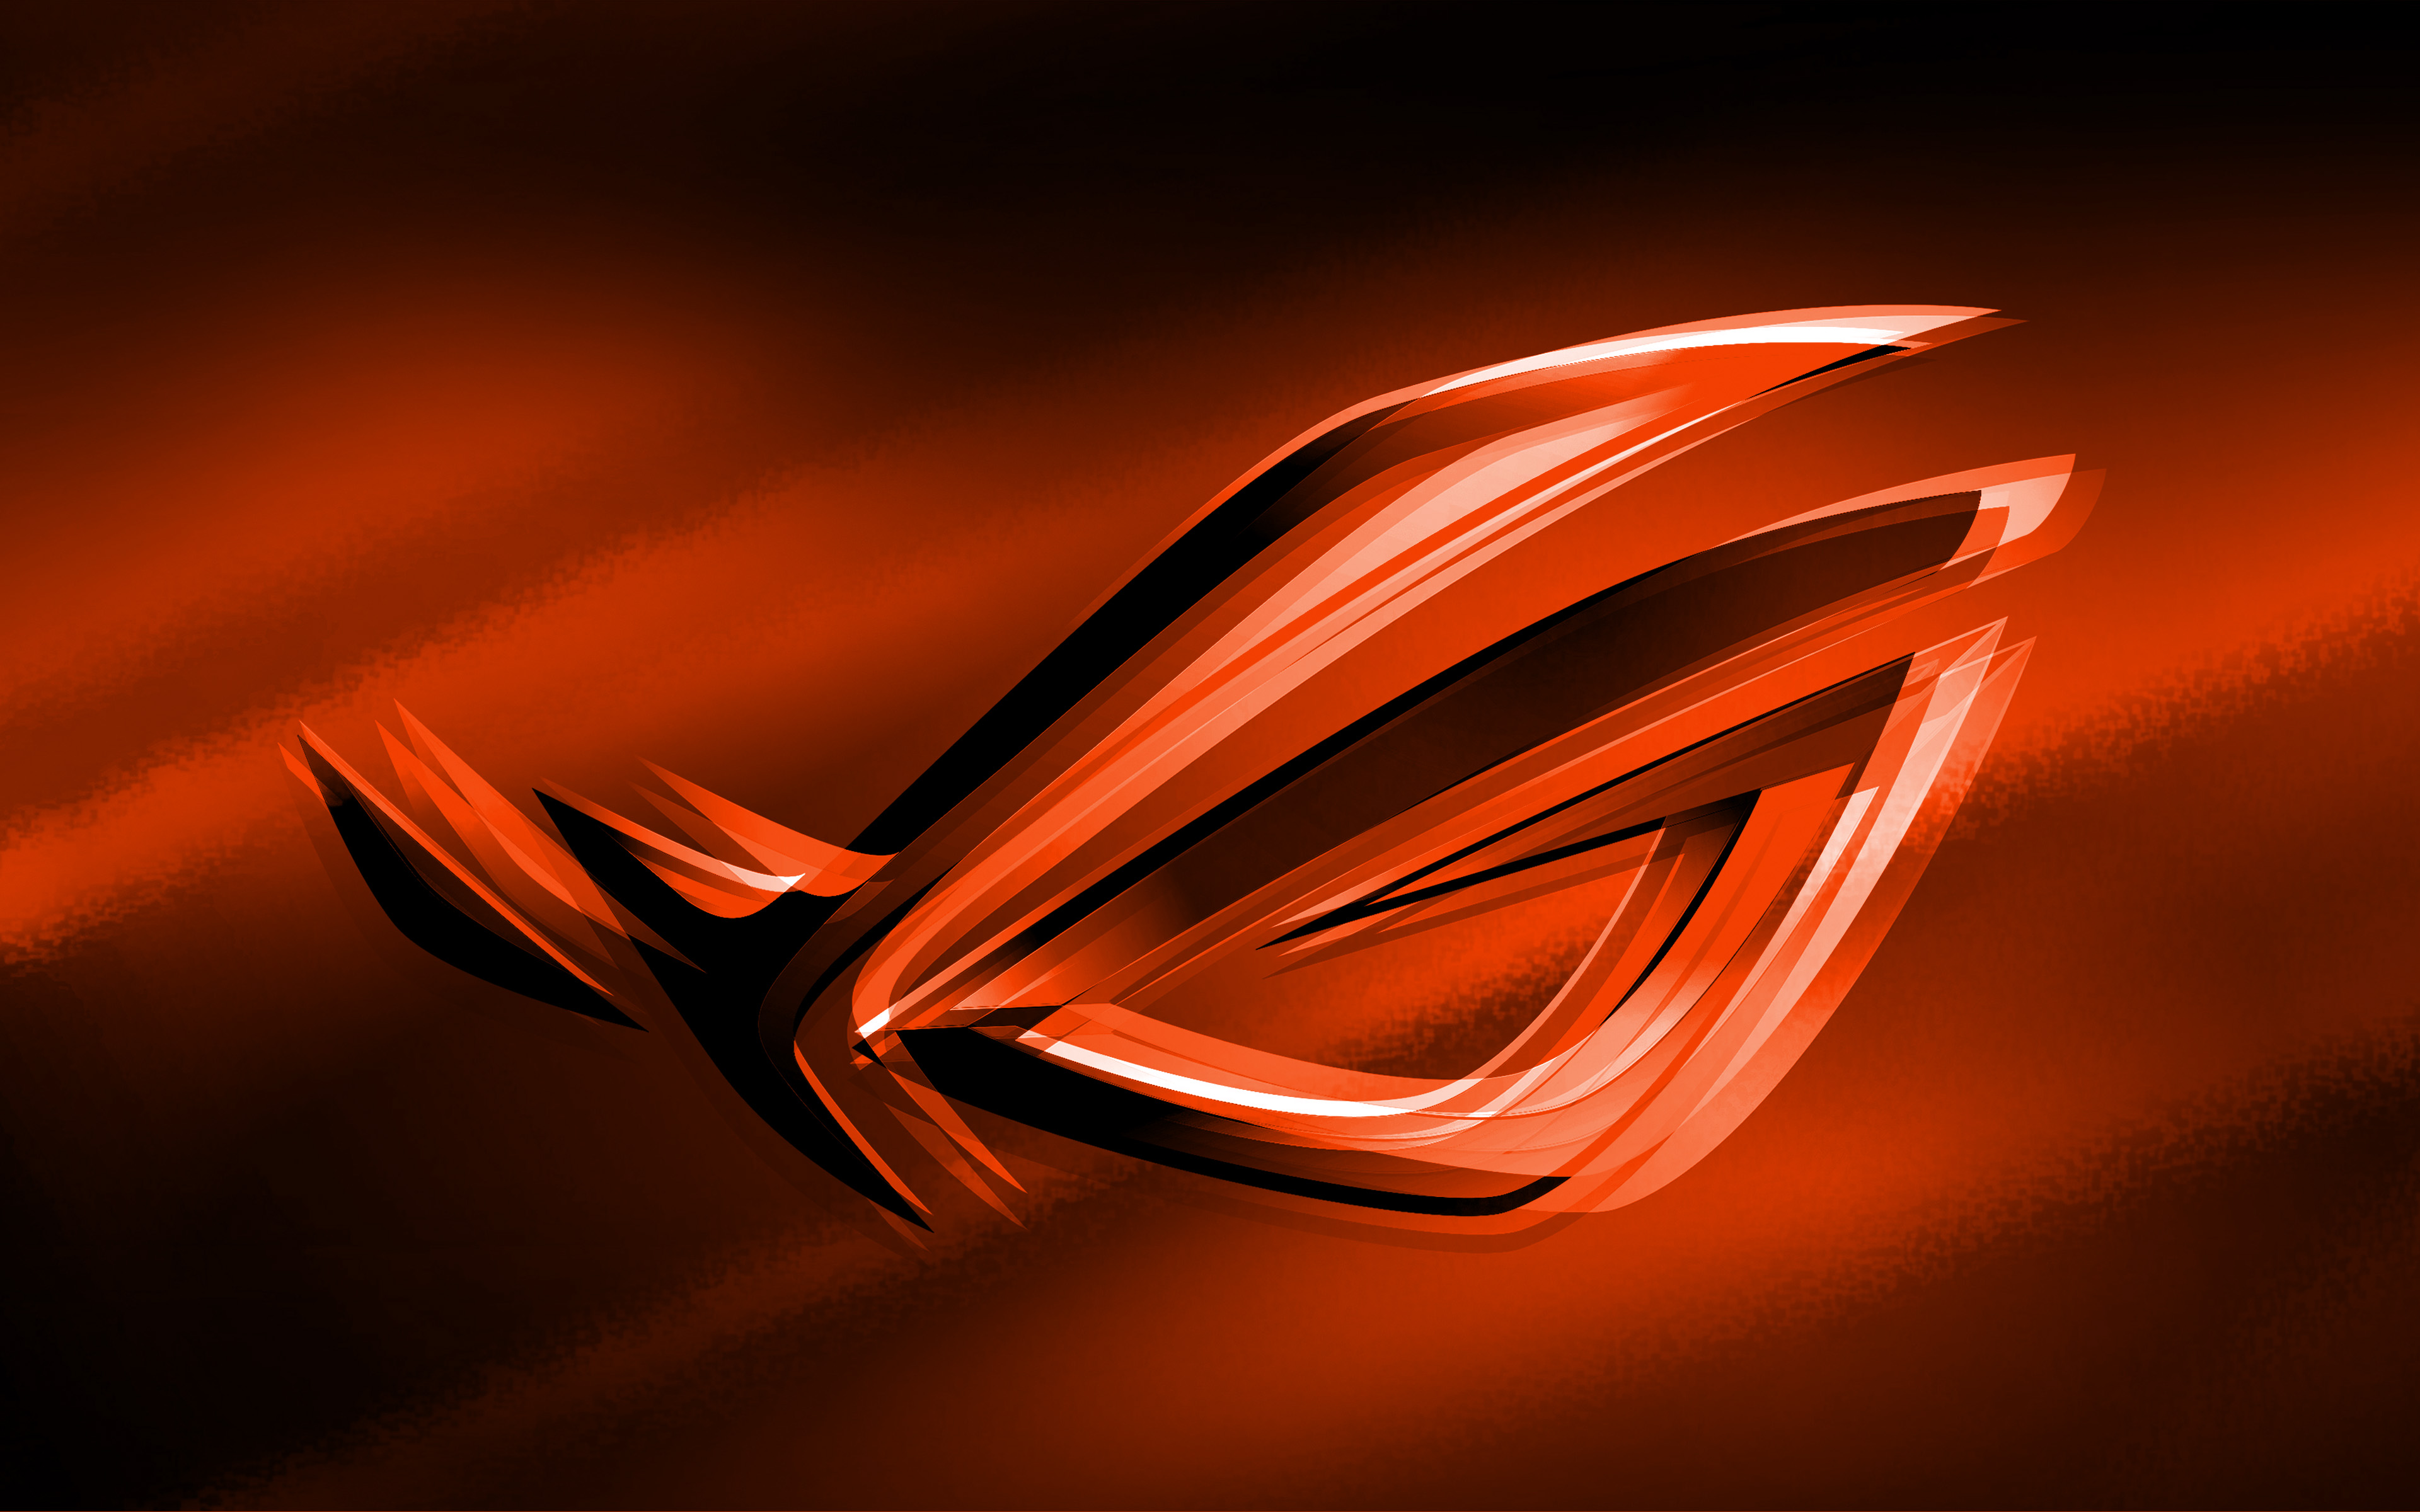 Download wallpapers 4k, RoG orange logo, orange blurred background